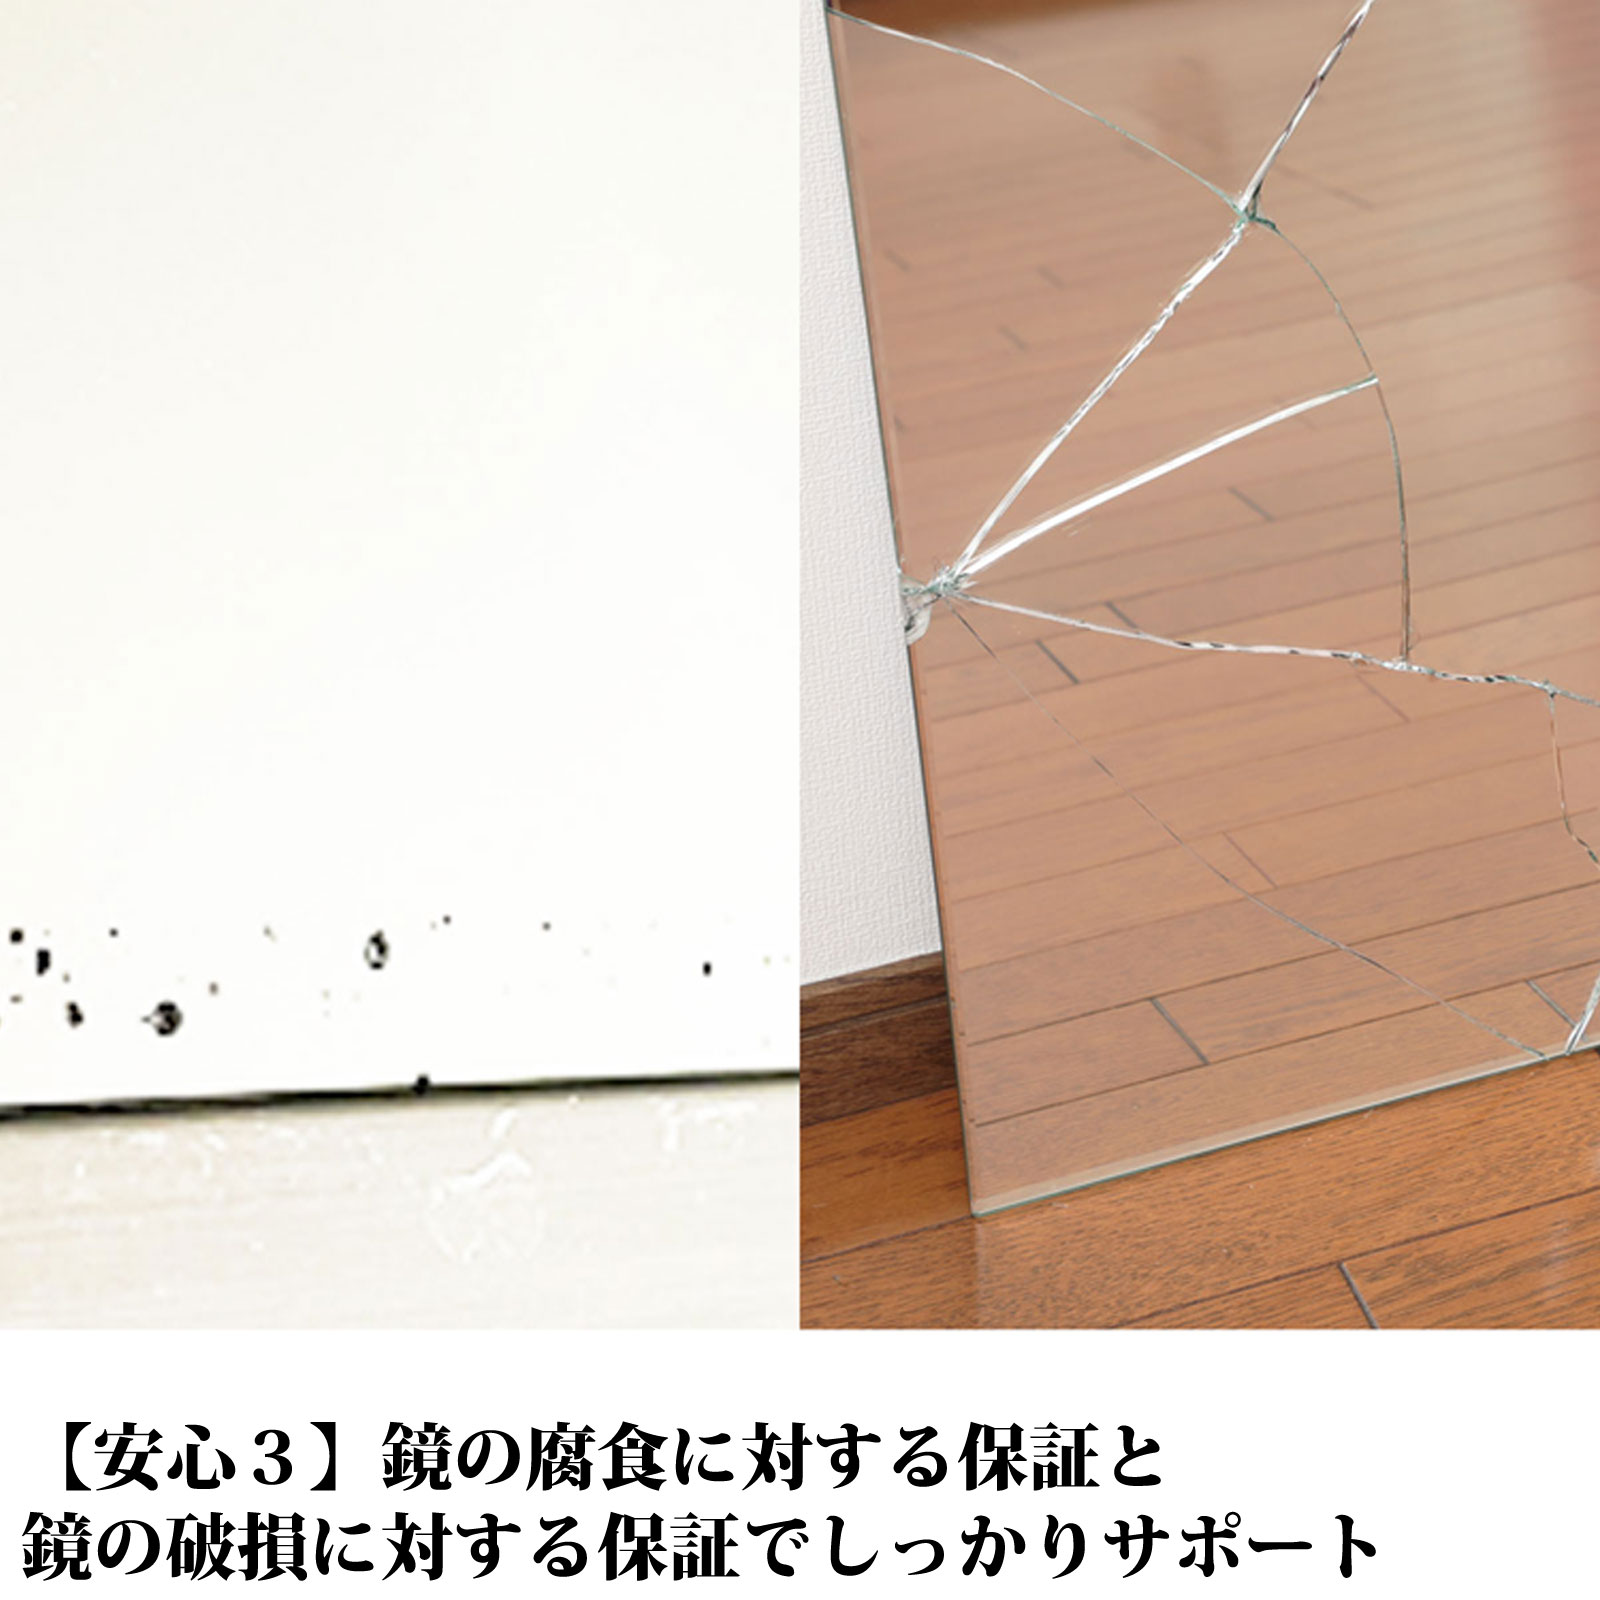  ванна зеркало для замены зеркало 300×800 mm толщина 5mm M5.. стекло сделано в Японии AGC asahi стекло солнечный зеркало модуль с ванной туалет ванная зеркало умывание зеркало Osaka зеркало распродажа 1 год гарантия 